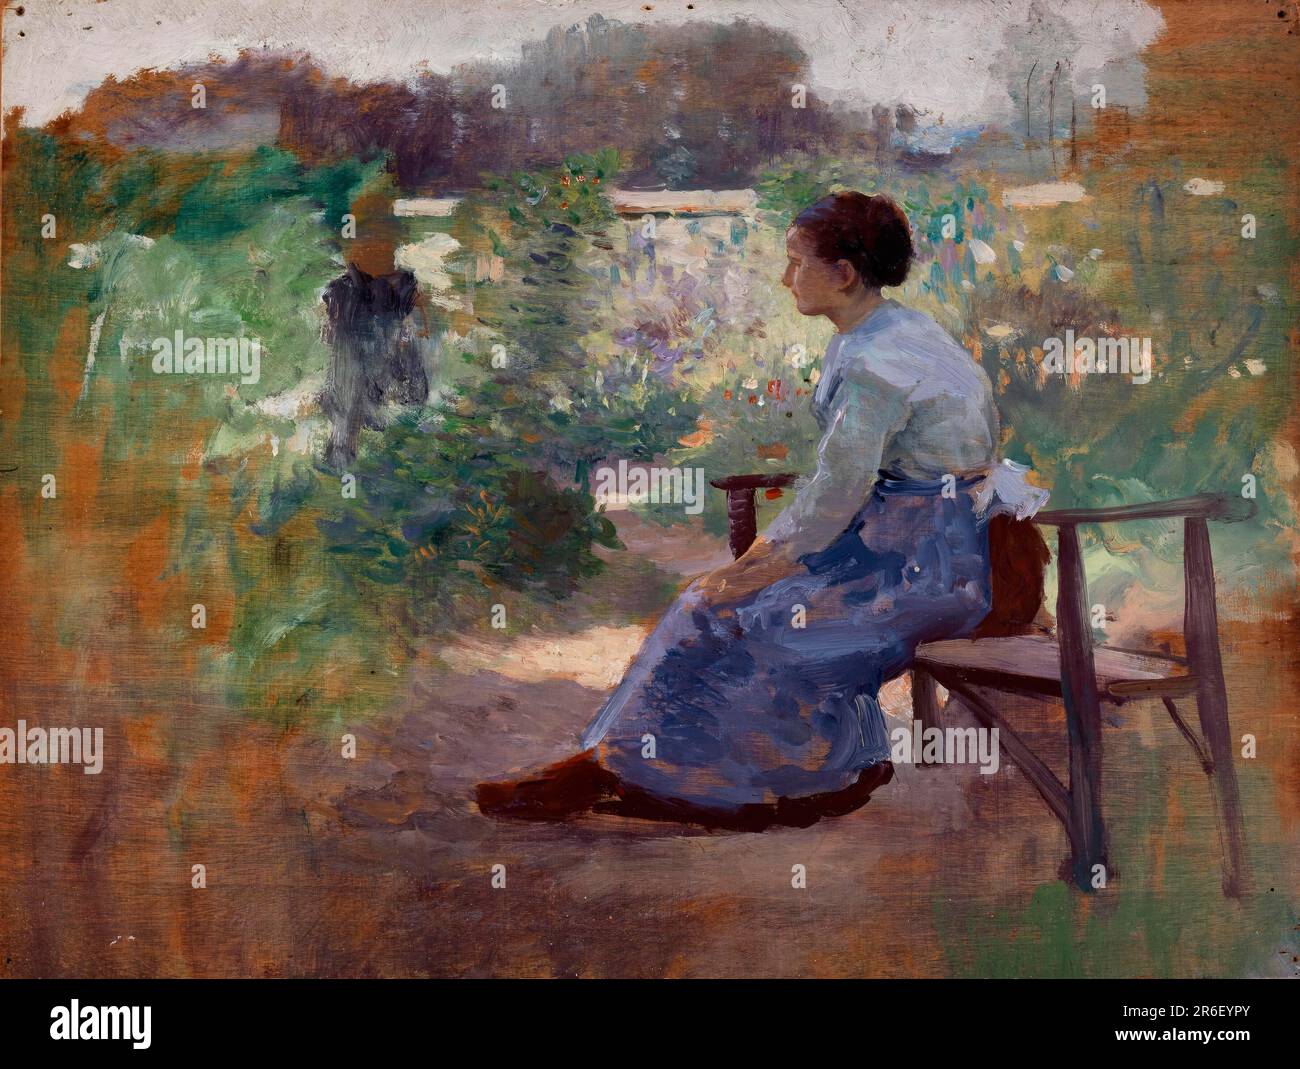 Femme assise dans un jardin. Date : n.d. huile sur toile. Musée: Smithsonian American Art Museum. Banque D'Images